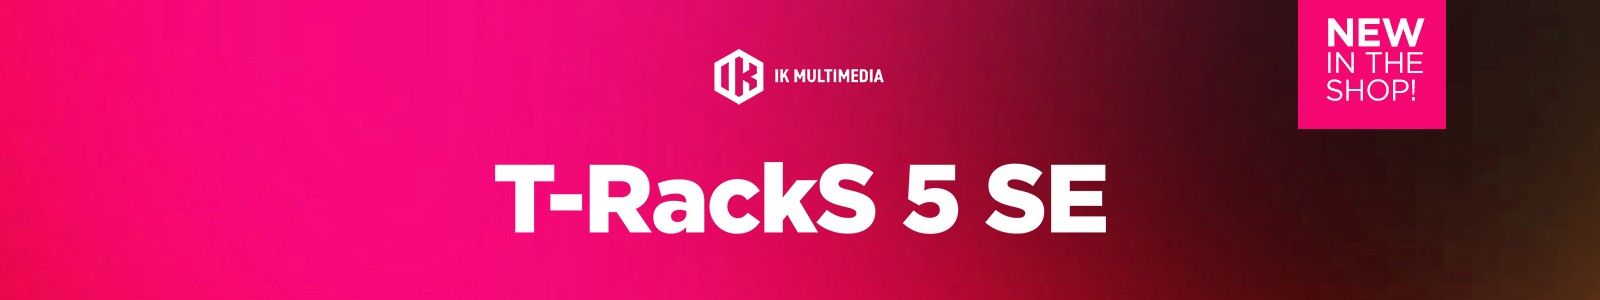 T-RackS 5 SE by IK Multimedia